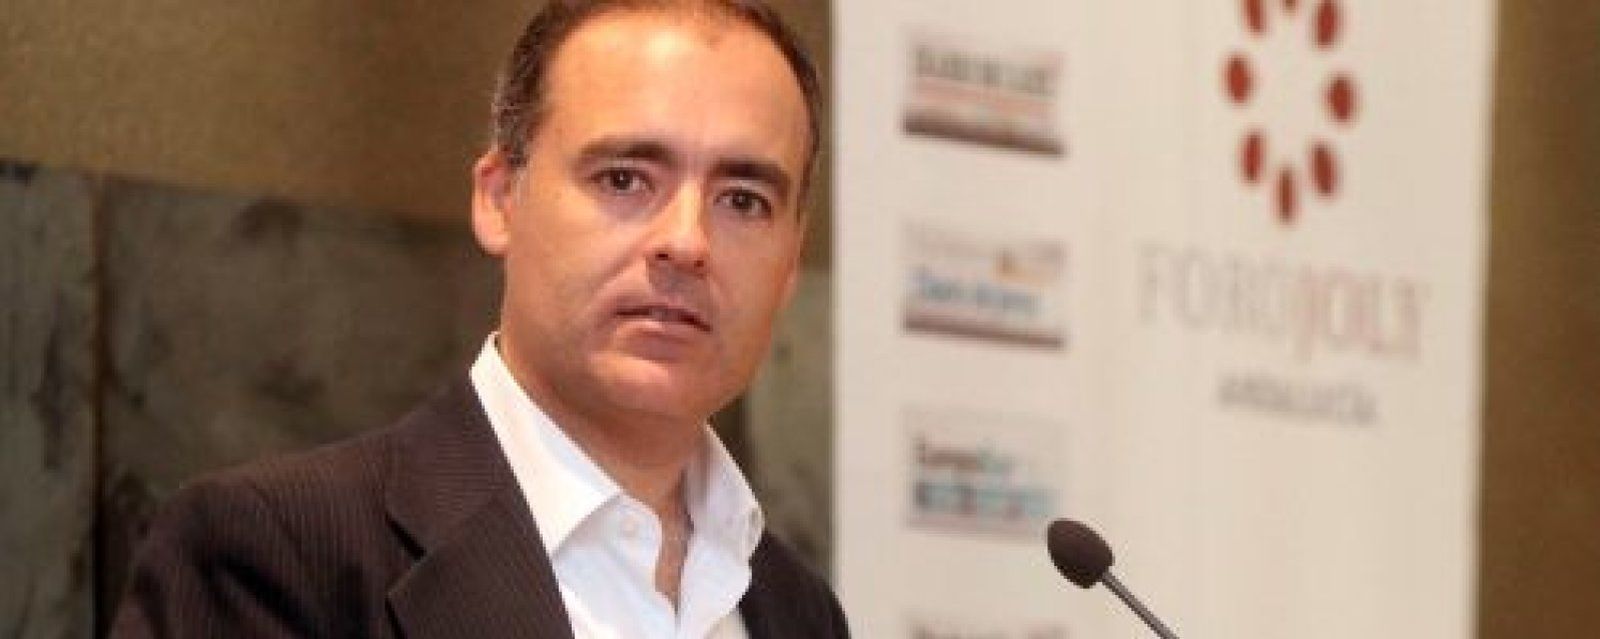 Foto: Zapatero (Google): "Hay que darse prisa en conocer el fenómeno web... Acabará en tres años"